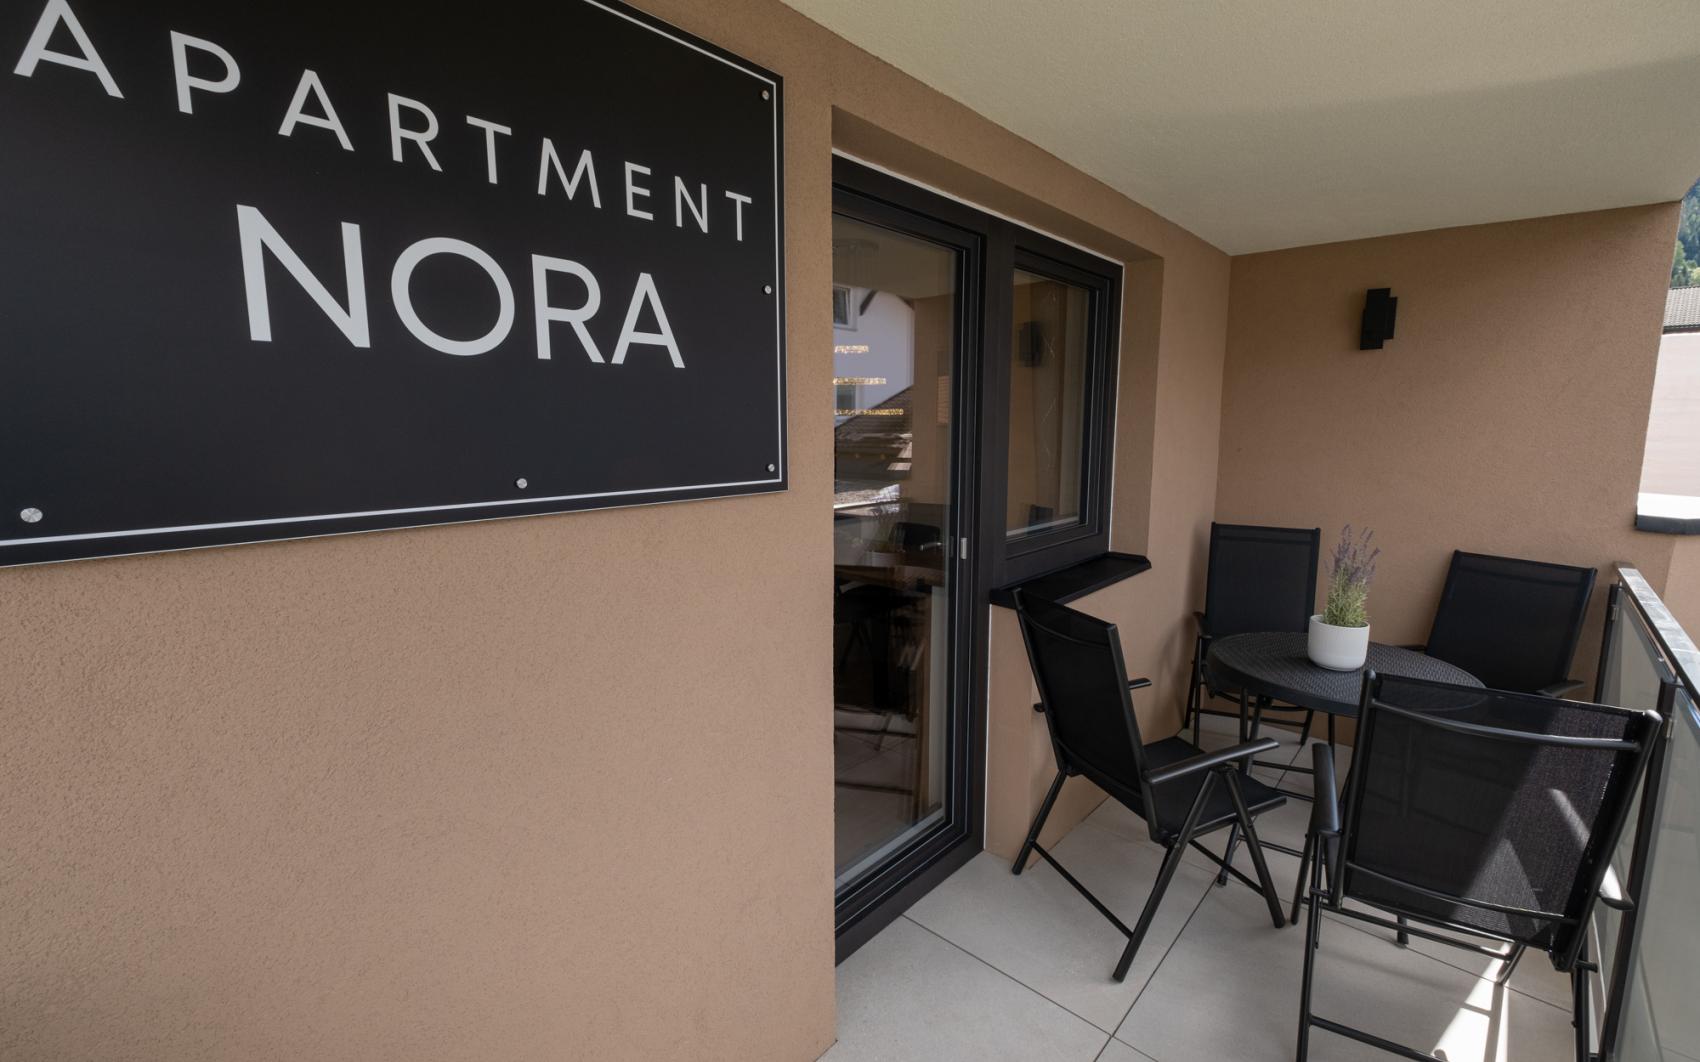 Apartment Nora